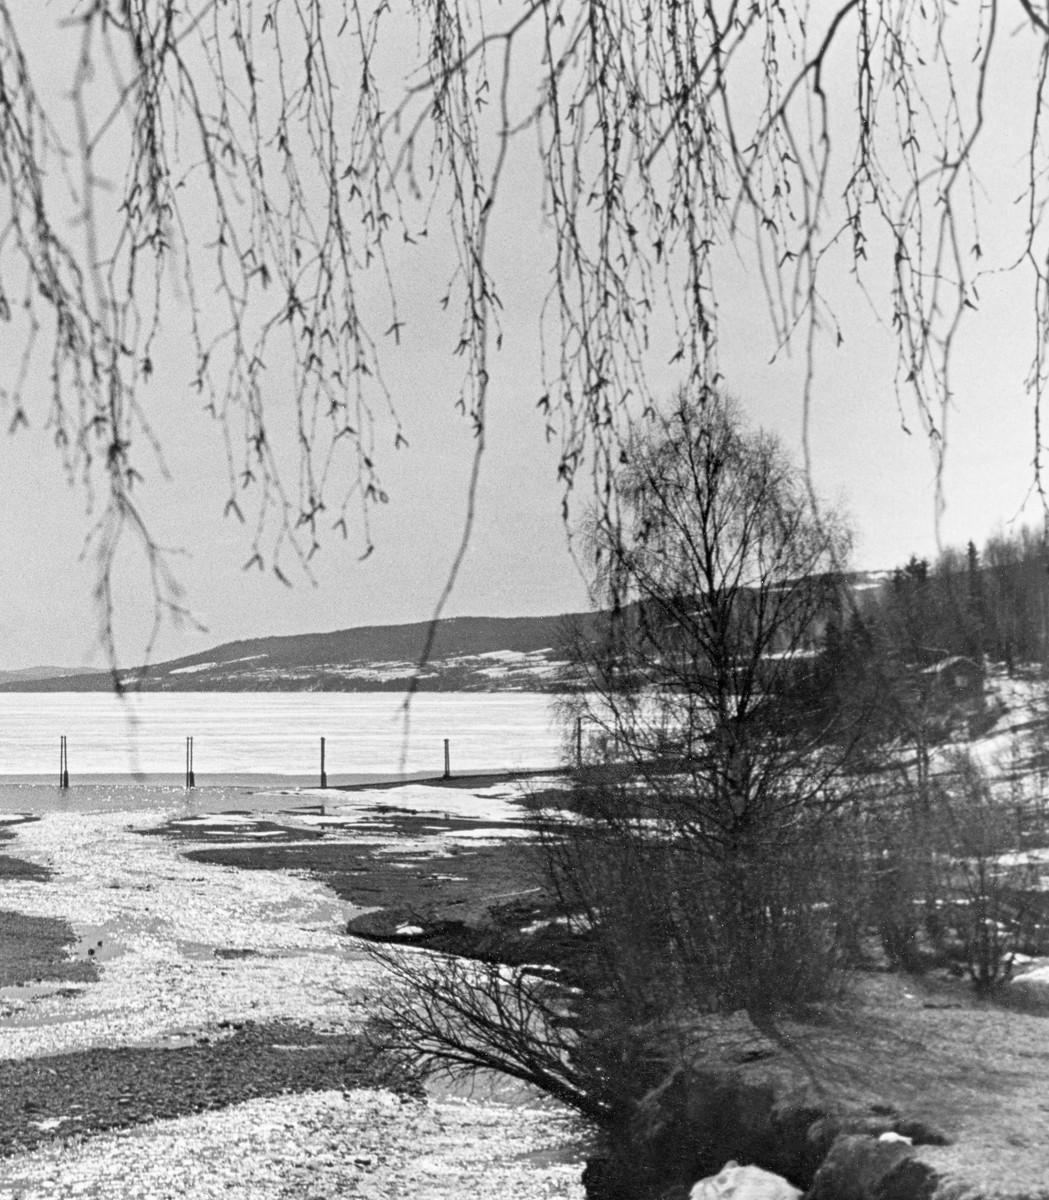 Fra elva Rindas utløp i Mjøsa ved Vingrom i daværende Fåberg kommune i Oppland.  Fotografiet er tatt våren 1939.  Vi ser ut over et bredt, grunt og steinete elveløp med lav vannføring og enkelte små isflak etter foregående vinter.  På motsatt side av Mjøsa ser vi i retning bygdelaget Søre Ål, som også lå i Fåberg. I Glomma fellesfløtingsforenings album er dette bildet er montert som den høyre delen av et todelt panoramaopptak.  

Elva Rinda kommer fra Rindtjernene sør for Rindåsen, i grensetraktene mellom Vestre Gausdal og Fåberg.  Den renner gjennom Saksumdalen, og når Mjøsa etter drøyt to mil.  Rinda renner gjennom skogtrakter, og den var derfor ei viktig fløtingselv.  For å hindre at fløtingsvirket strøk fra elveosen og ut i Mjøsa ble det oppsatt ei lense som skulle samle opp alle stokkene, slik at de kunne buntes før de ble buksert videre sørover.  Lensa besto av en kjede av flytende tømmerstokker, støttet av ei pælerekke.